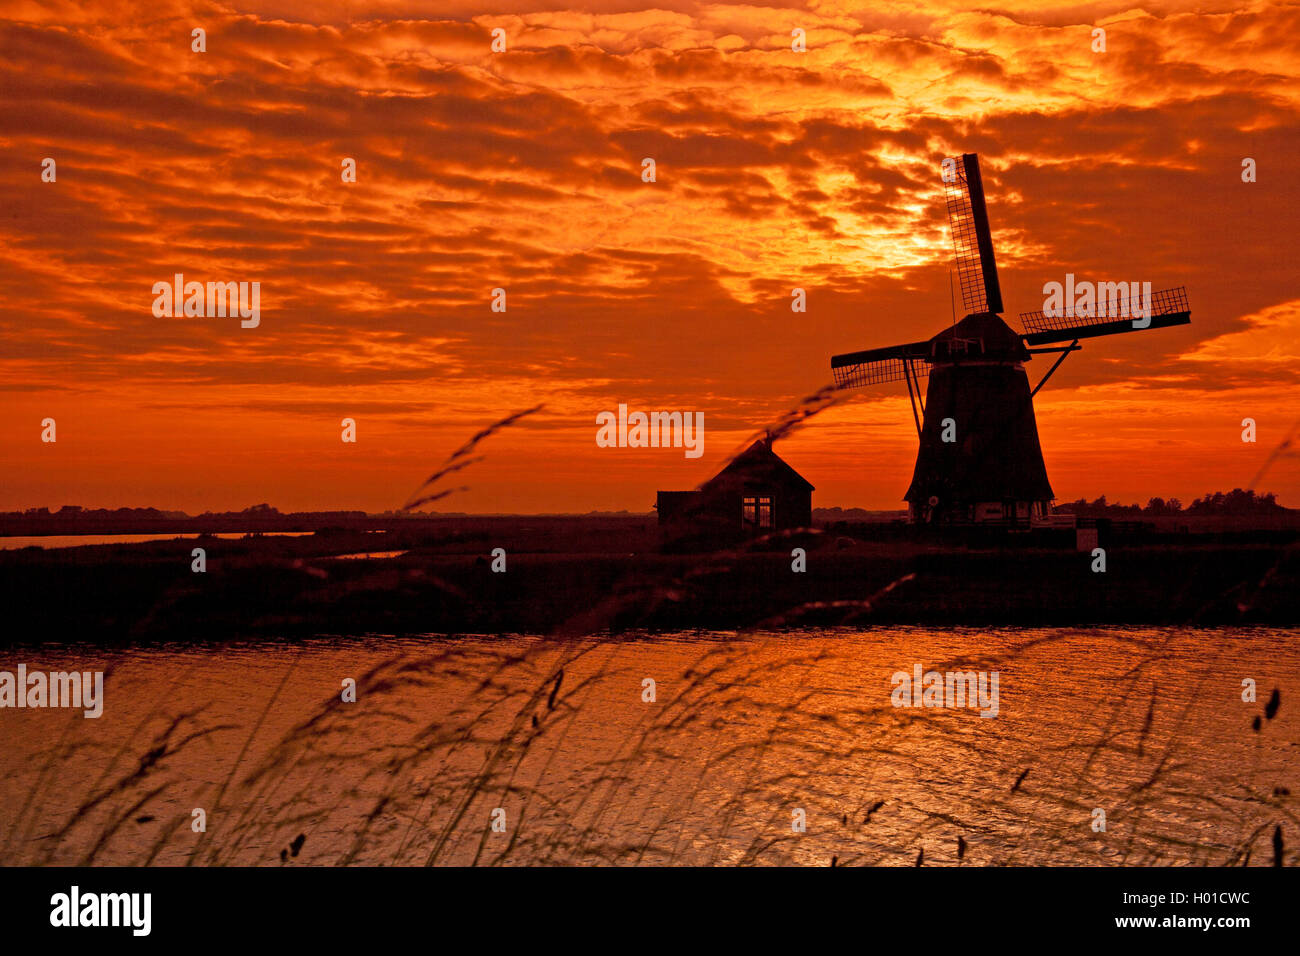 Windmuehle bei Sonnenuntergang Het Noorden, Niederlande, Texel | molino Het Noorden al atardecer, Holanda, Texel | BLWS433389 Foto de stock